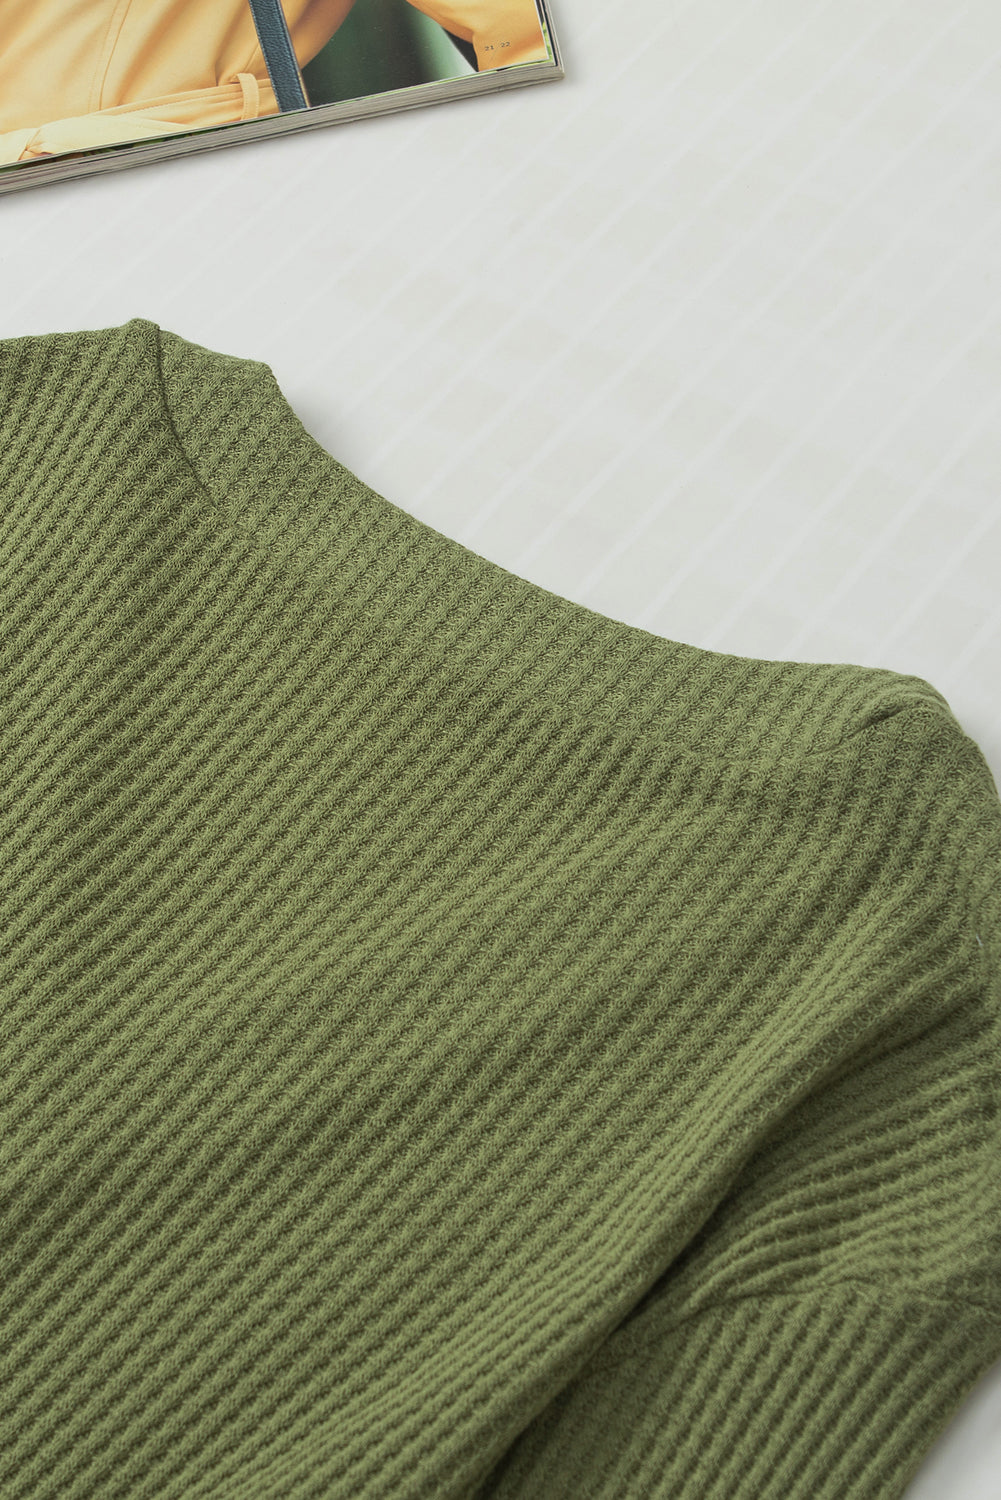 Haut à manches longues en tricot texturé vert jungle, col en V, poignets boutonnés